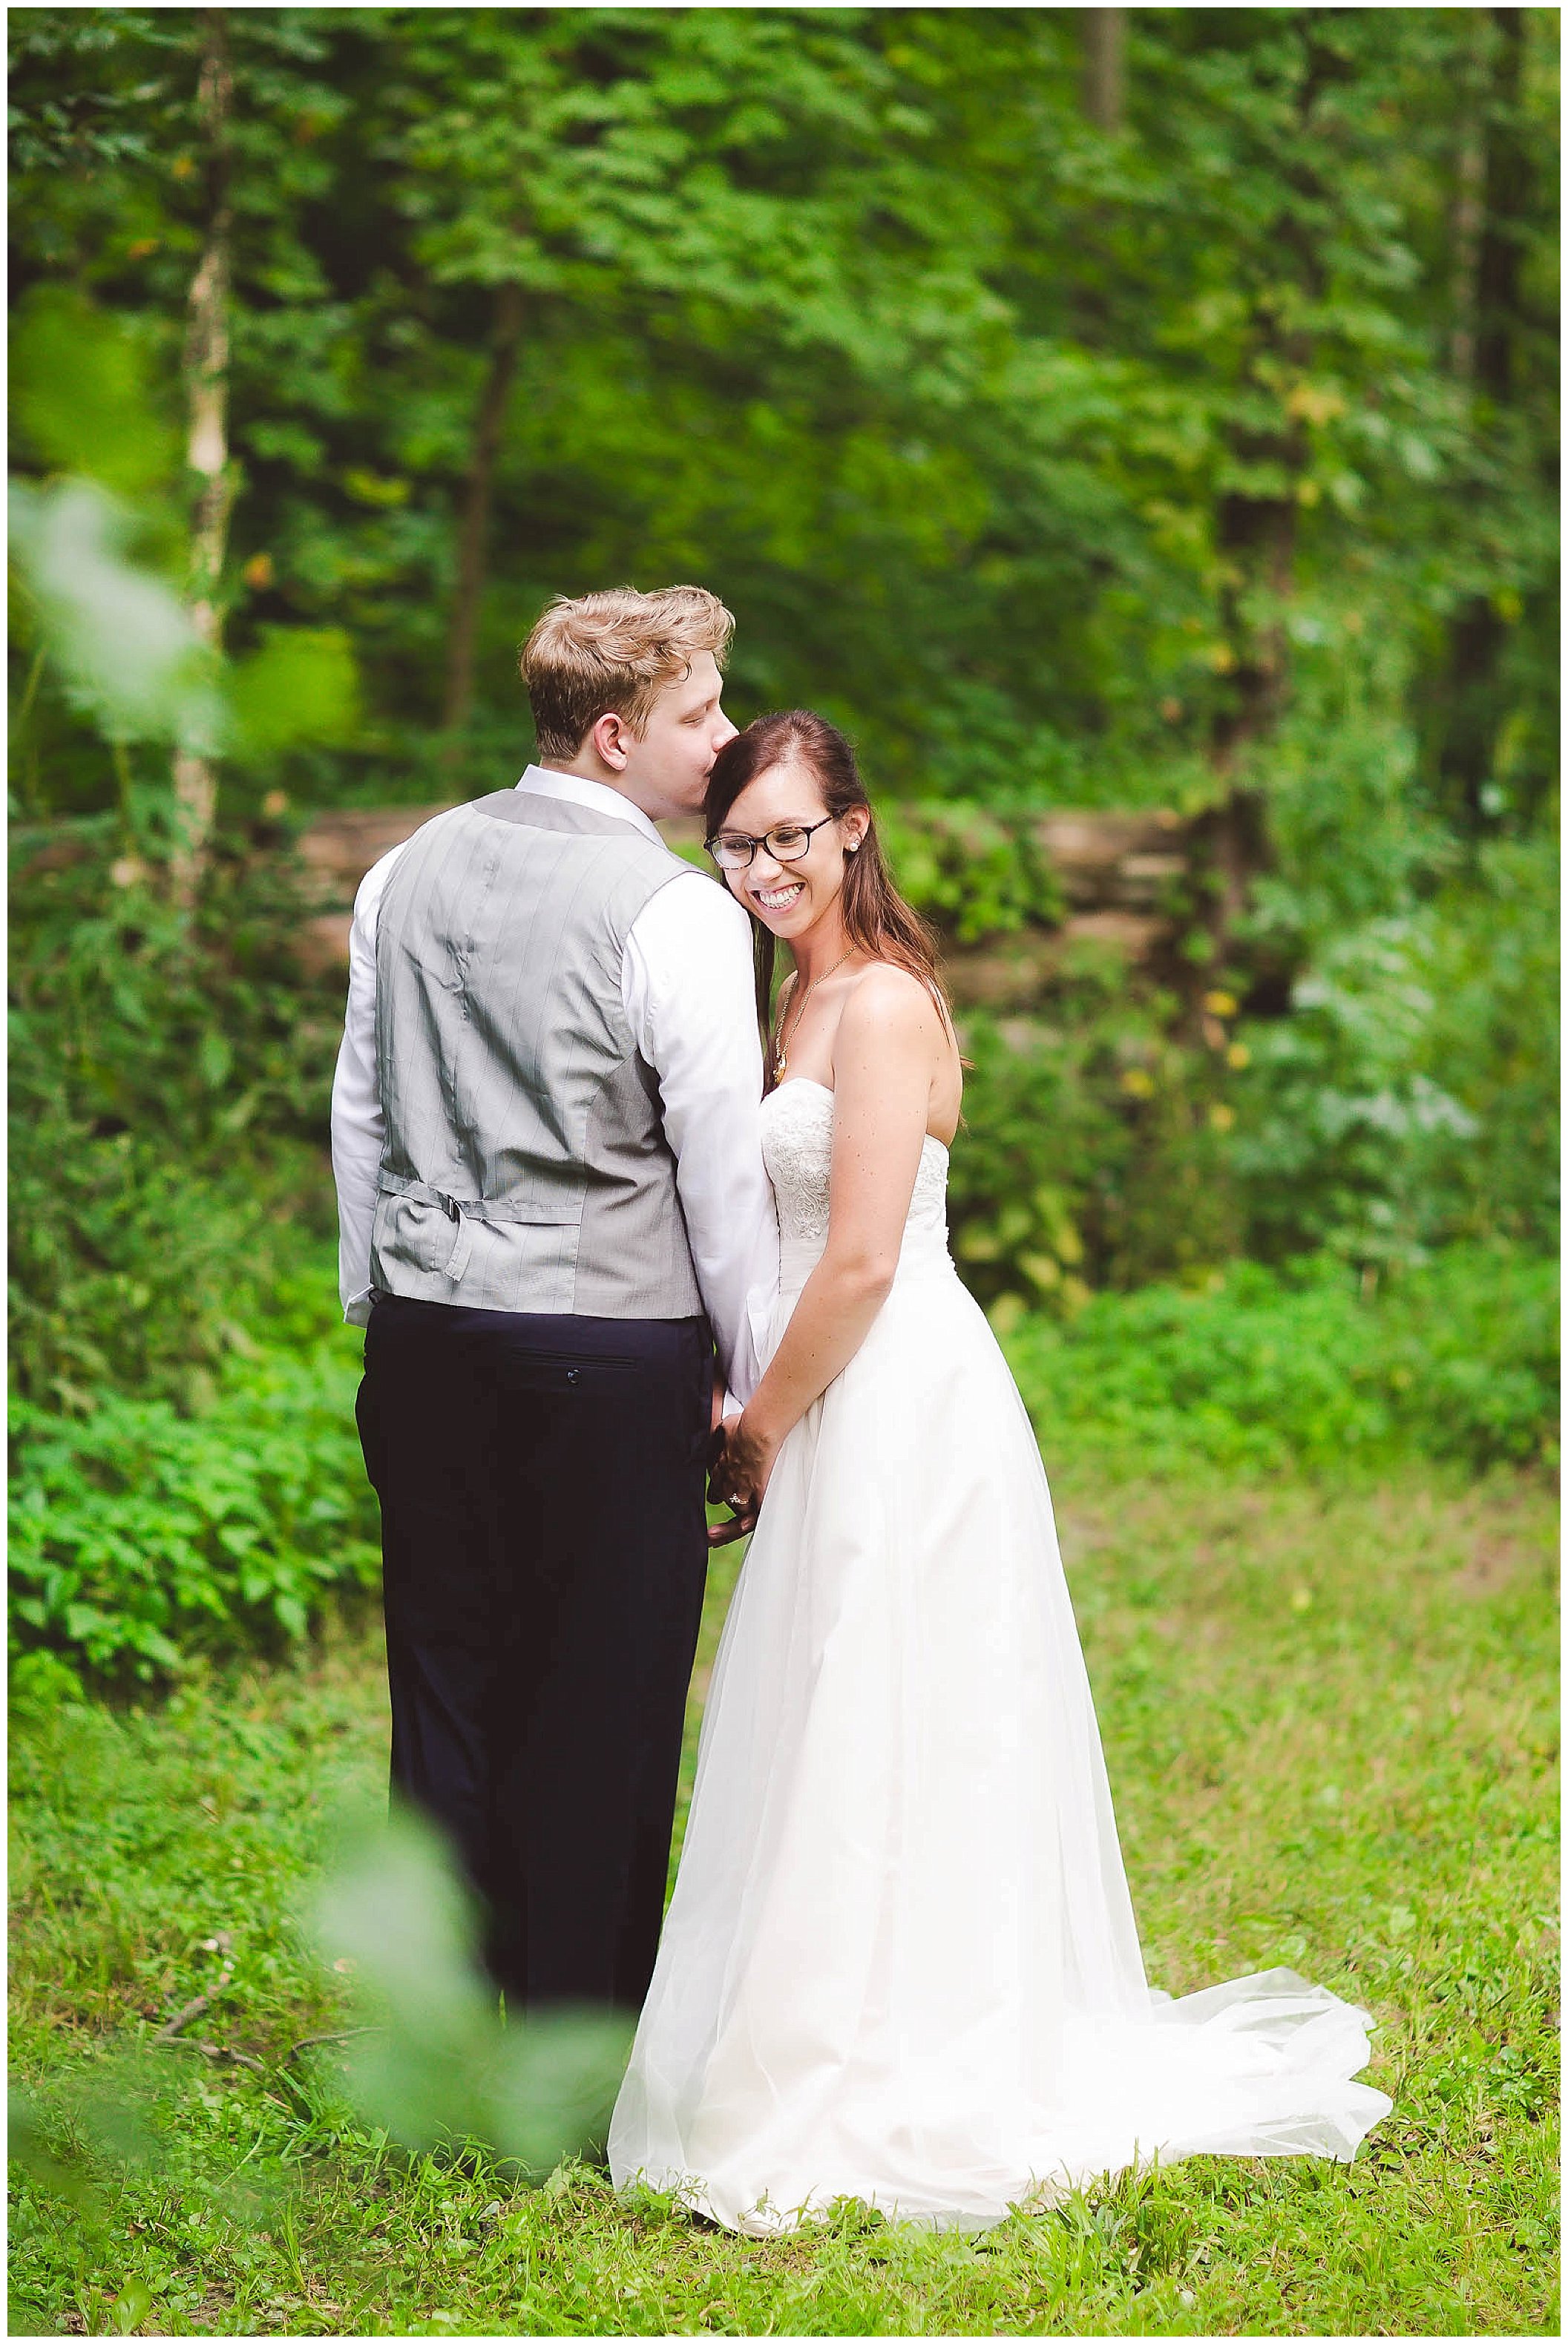 Stunning backyard wedding with twinkly lights, Fort Wayne Indiana Wedding Photographer_0045.jpg